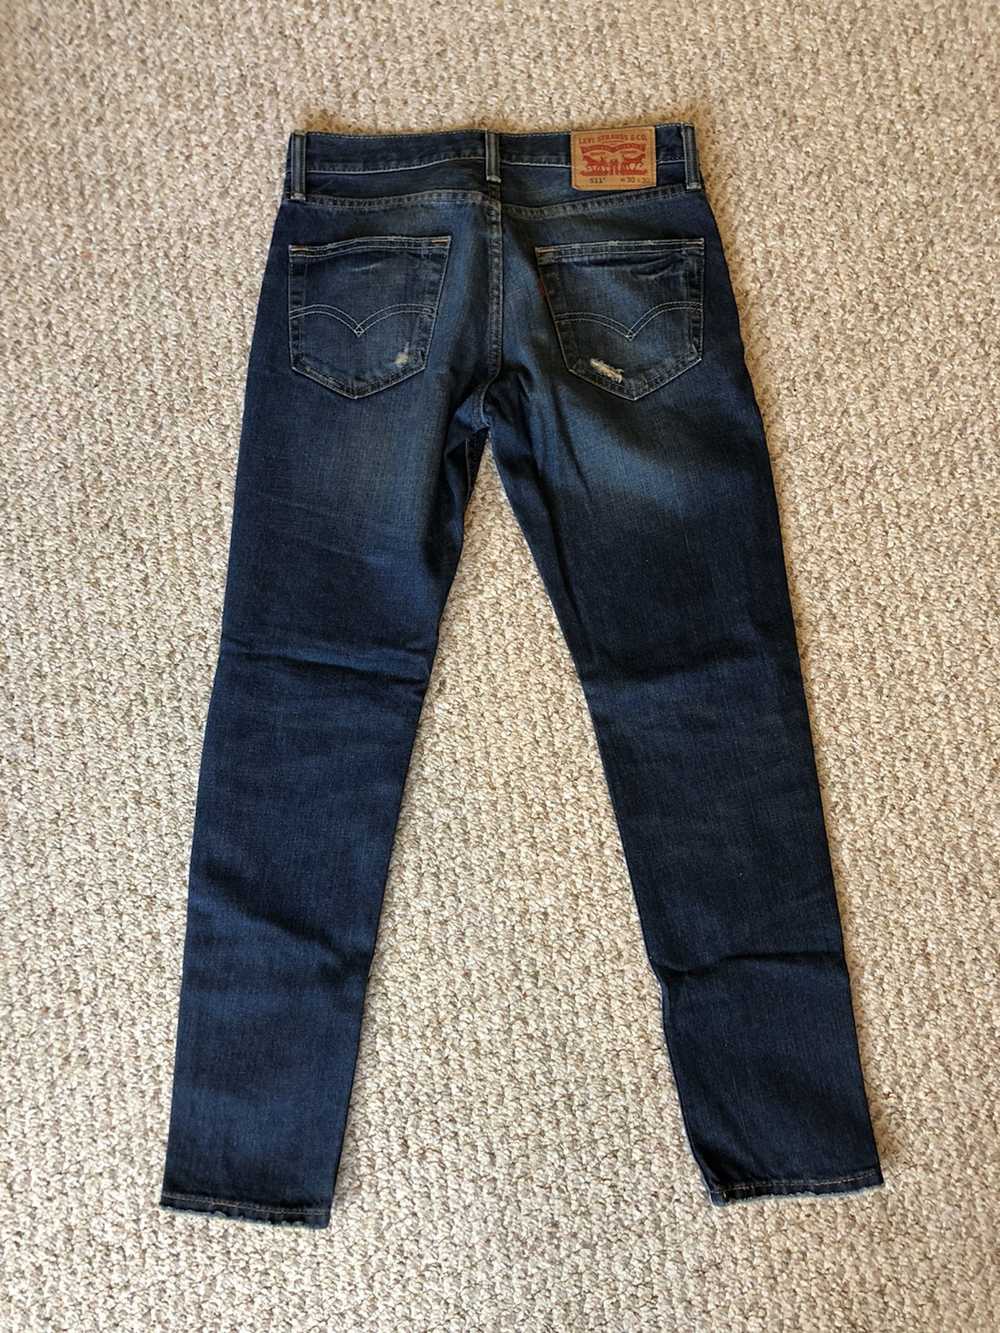 Levi's Levi's 511 Slim Fit Jeans - image 2